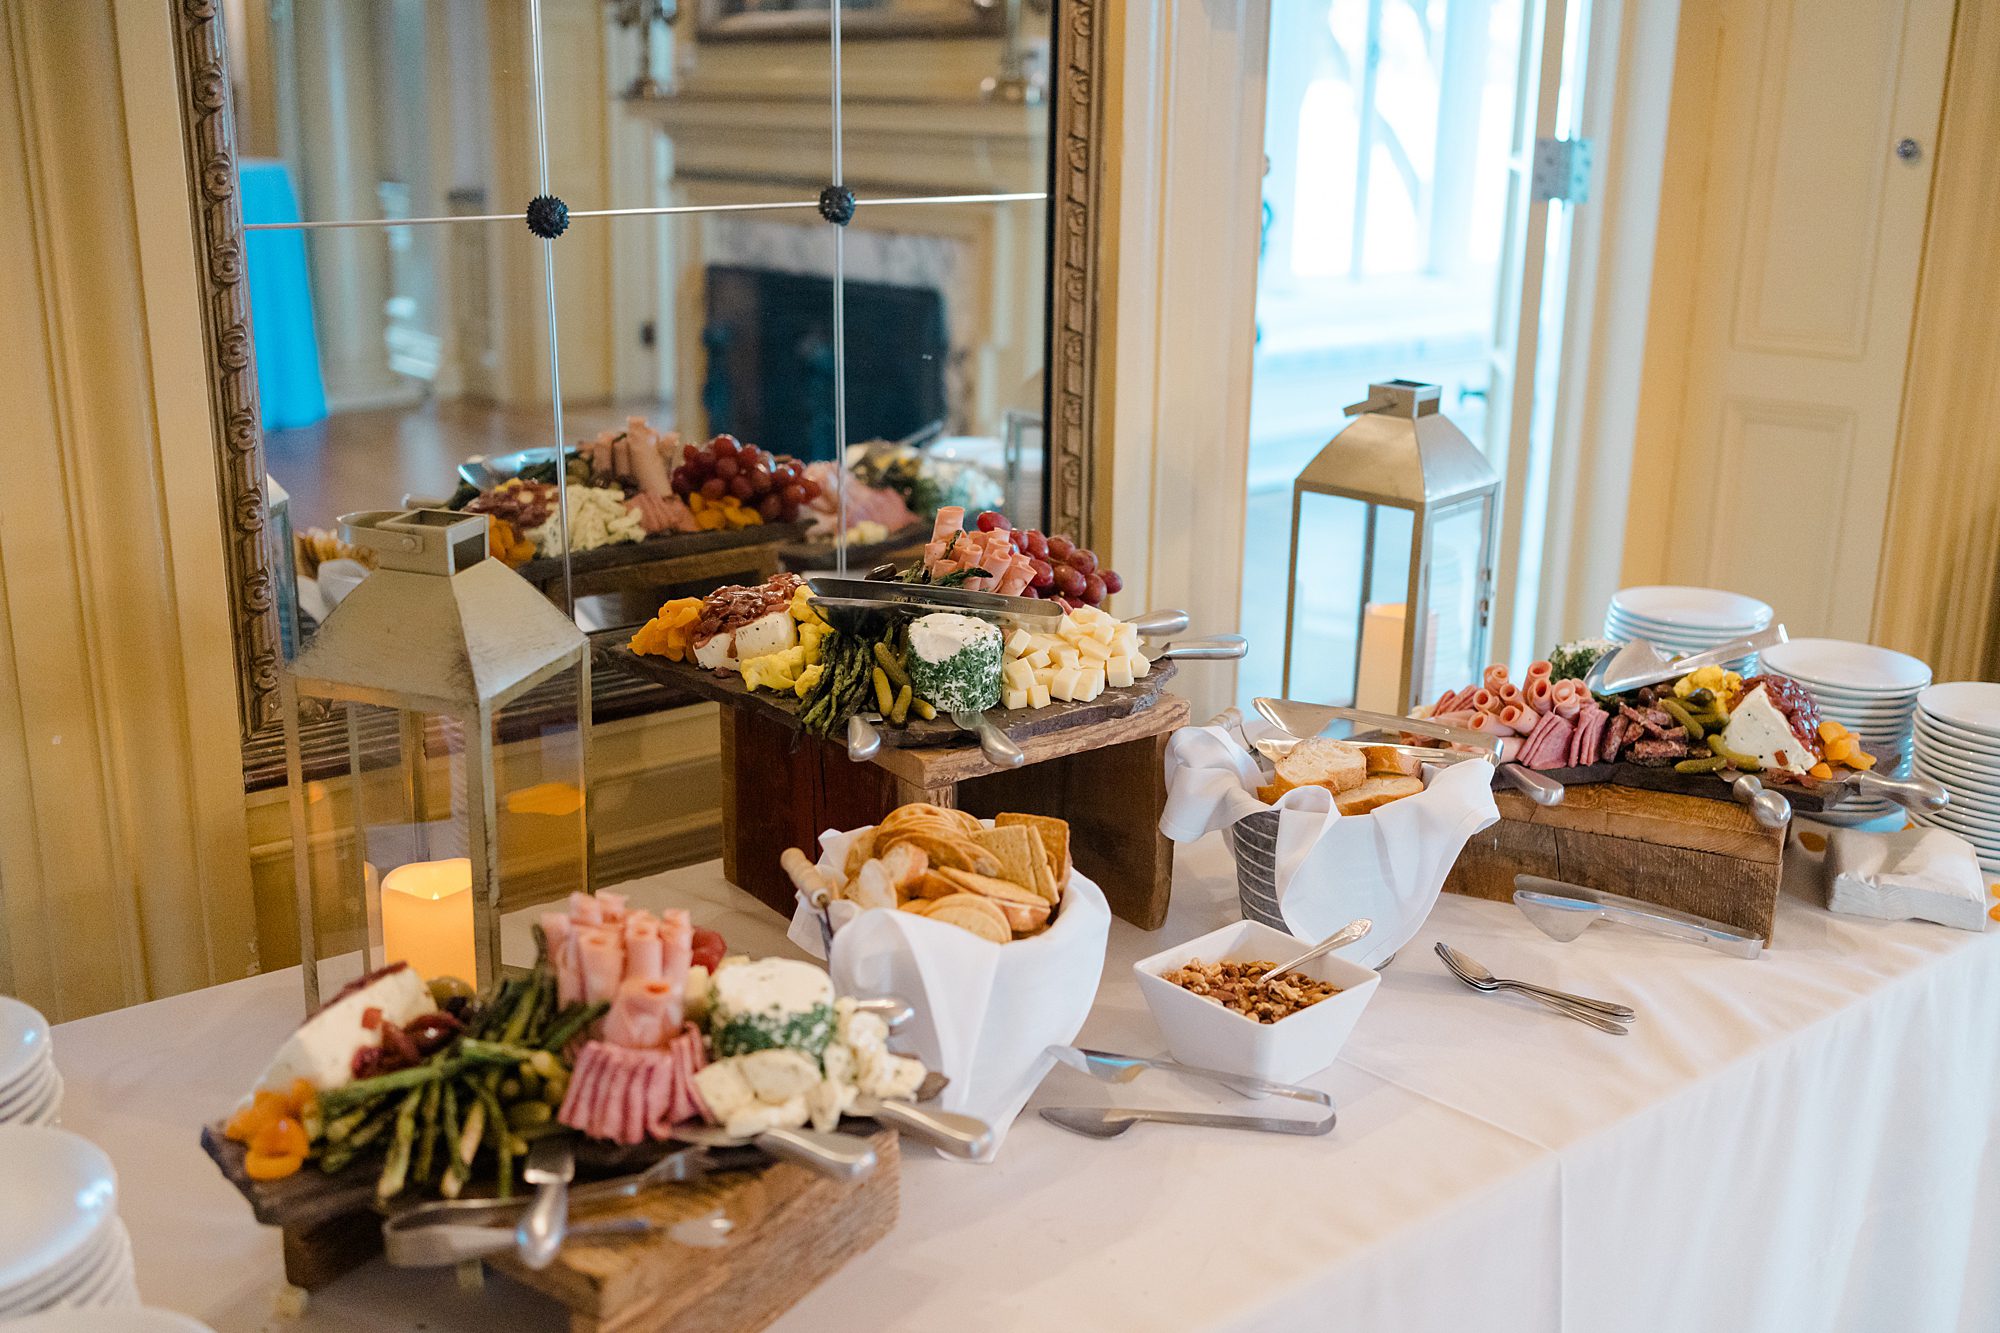 food spread at wedding reception